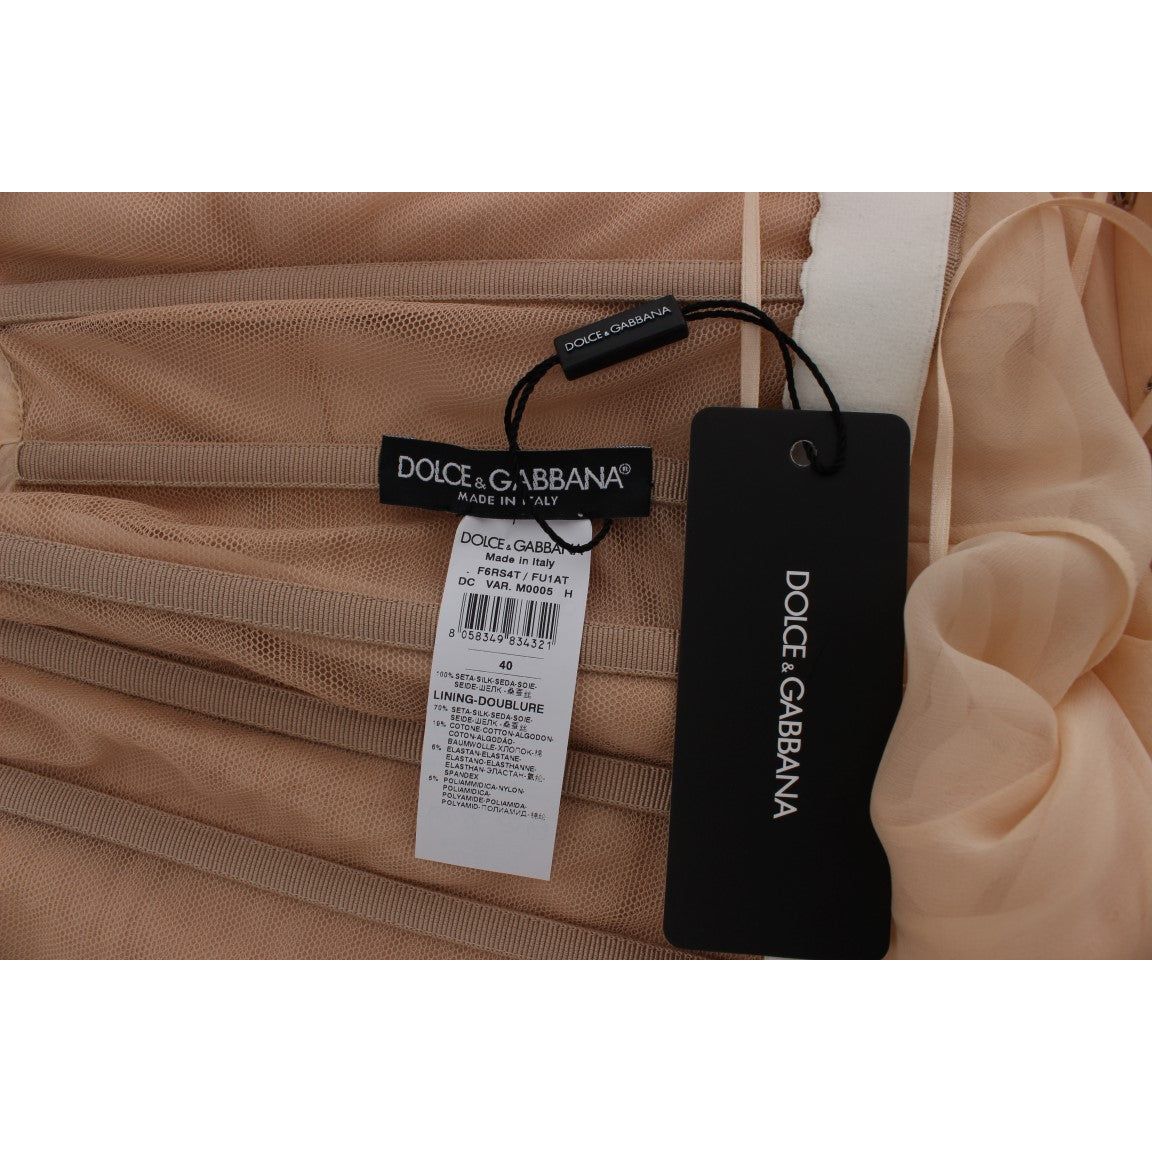 Dolce & Gabbana | Beige Silk Ball Gown Full Length Dress | McRichard Designer Brands